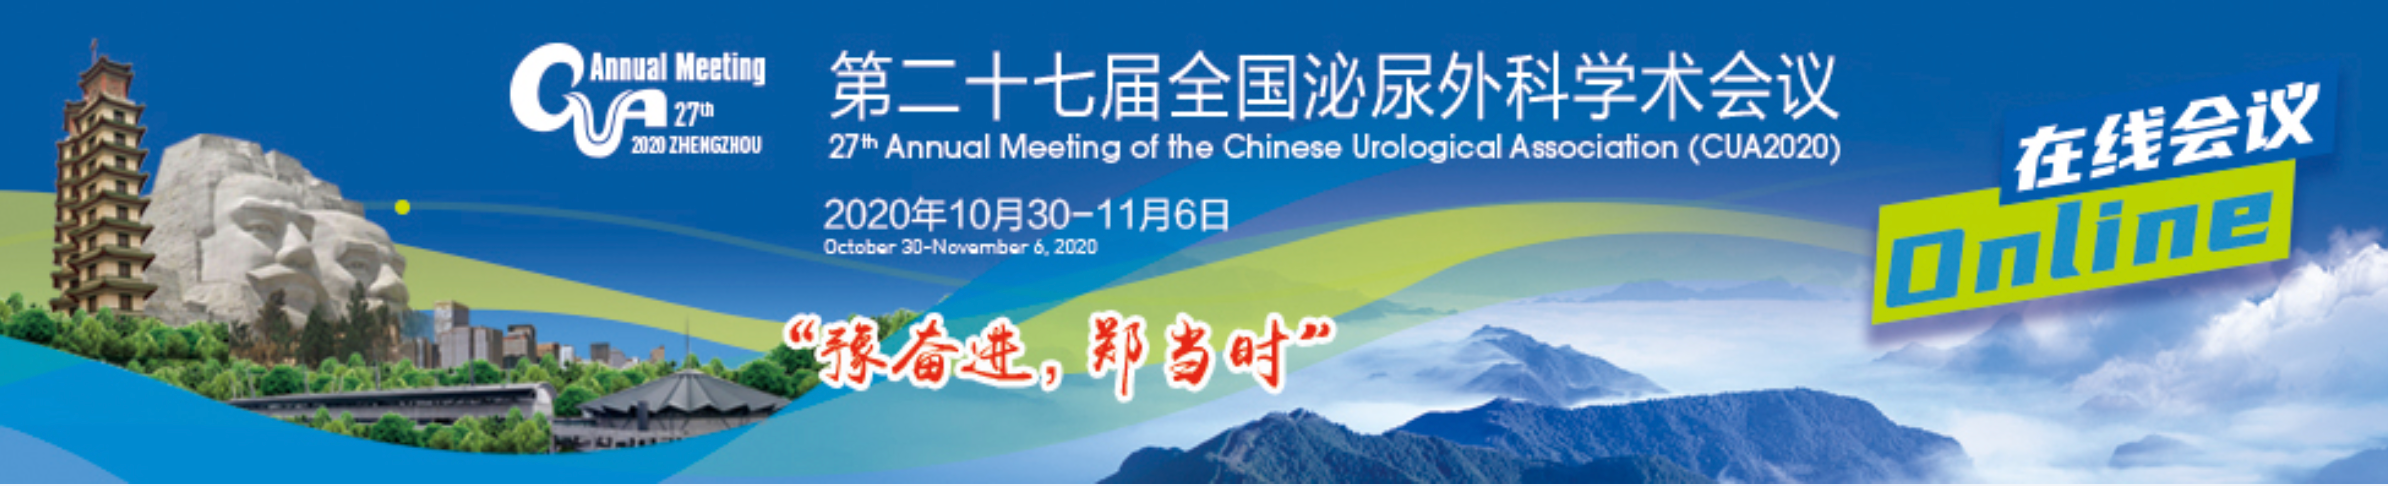 第二十七届全国泌尿外科学术会议CUA2020